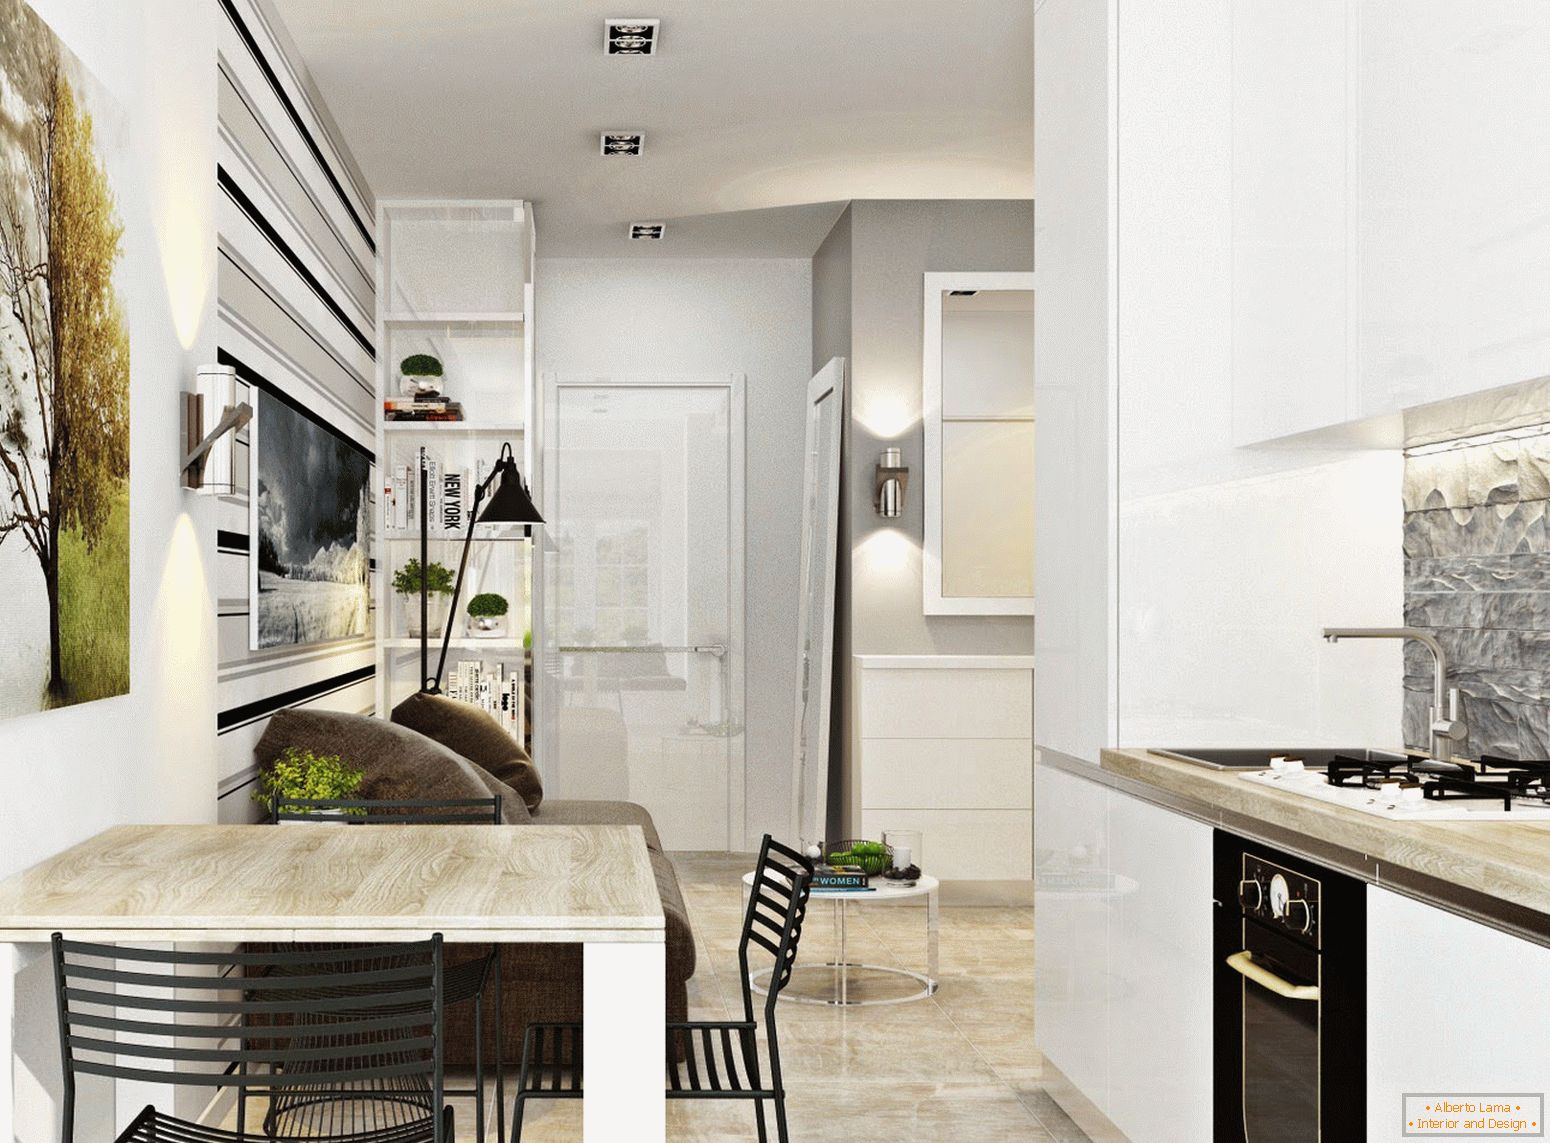 Interior de la cocina y el comedor en el estilo del minimalismo blanco